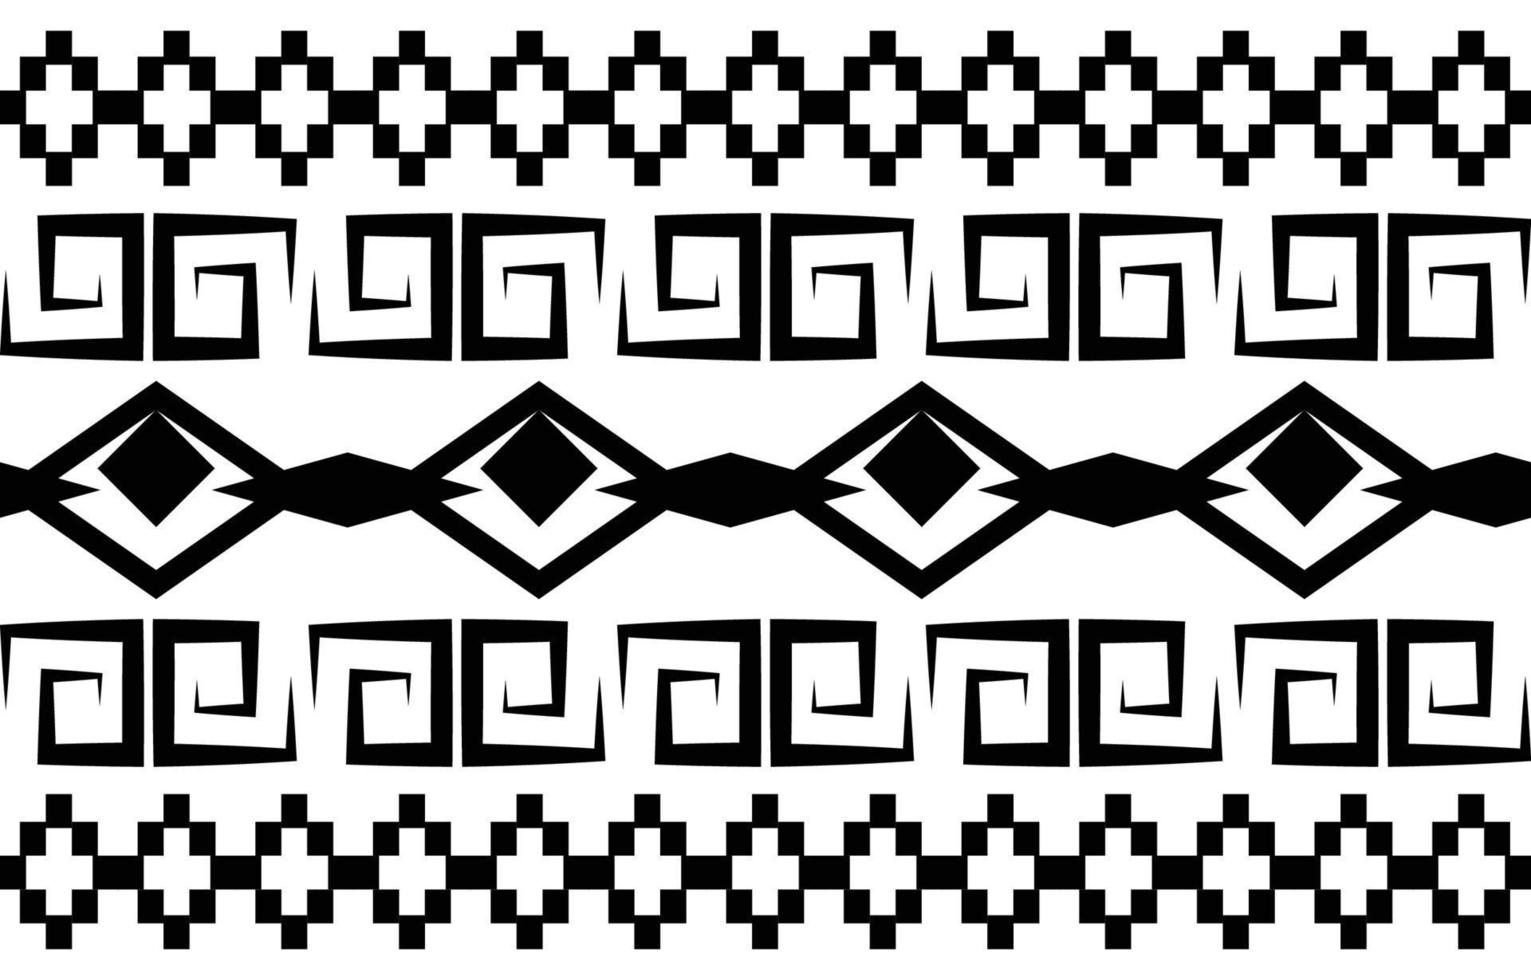 conception de motifs géométriques ethniques abstraits tribaux noirs et blancs pour le fond ou le papier peint.illustration vectorielle pour imprimer des motifs de tissus, des tapis, des chemises, des costumes, des turbans, des chapeaux, des rideaux. vecteur